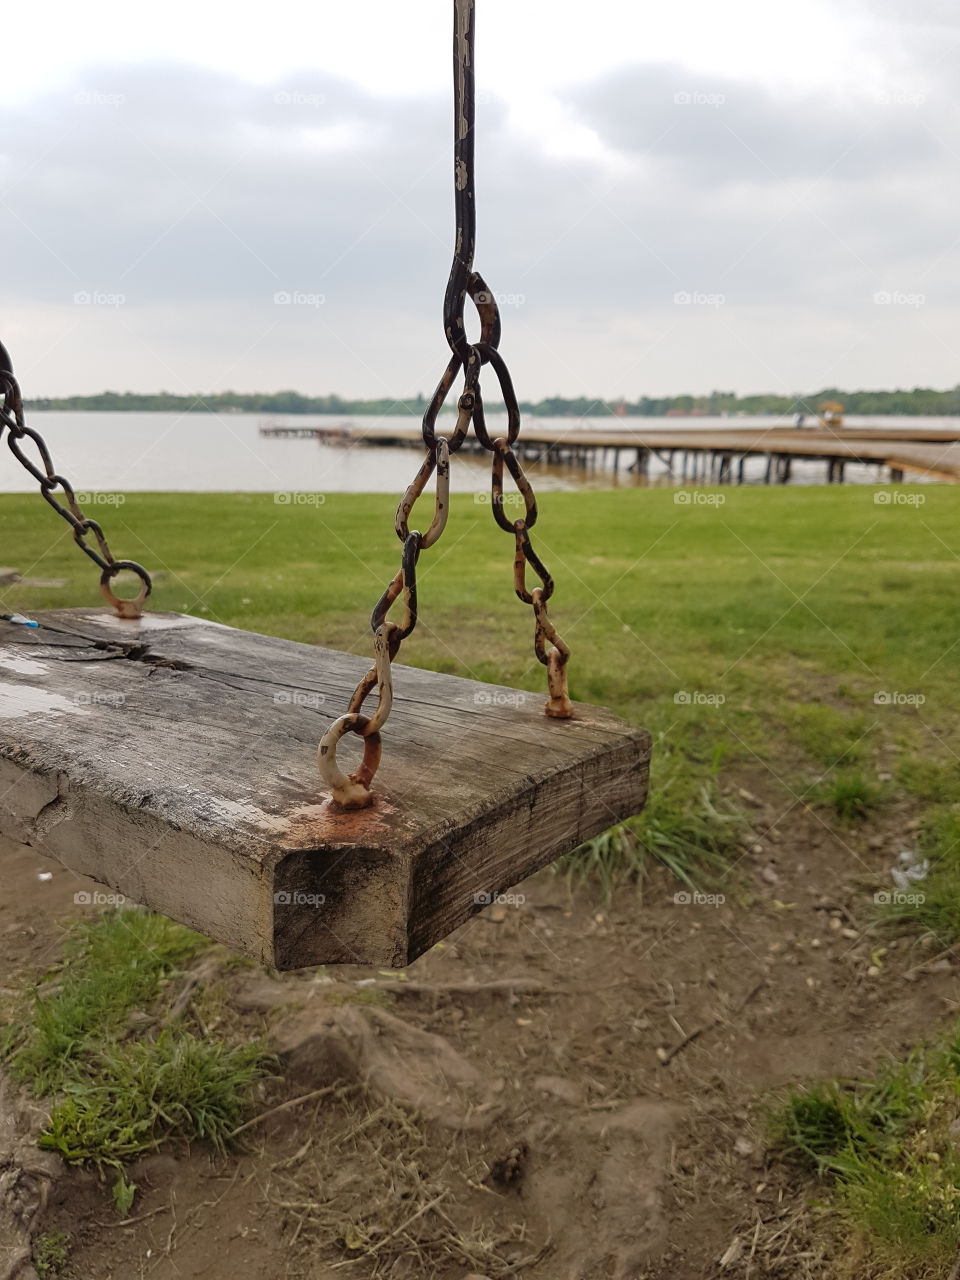 Old swing besides lake